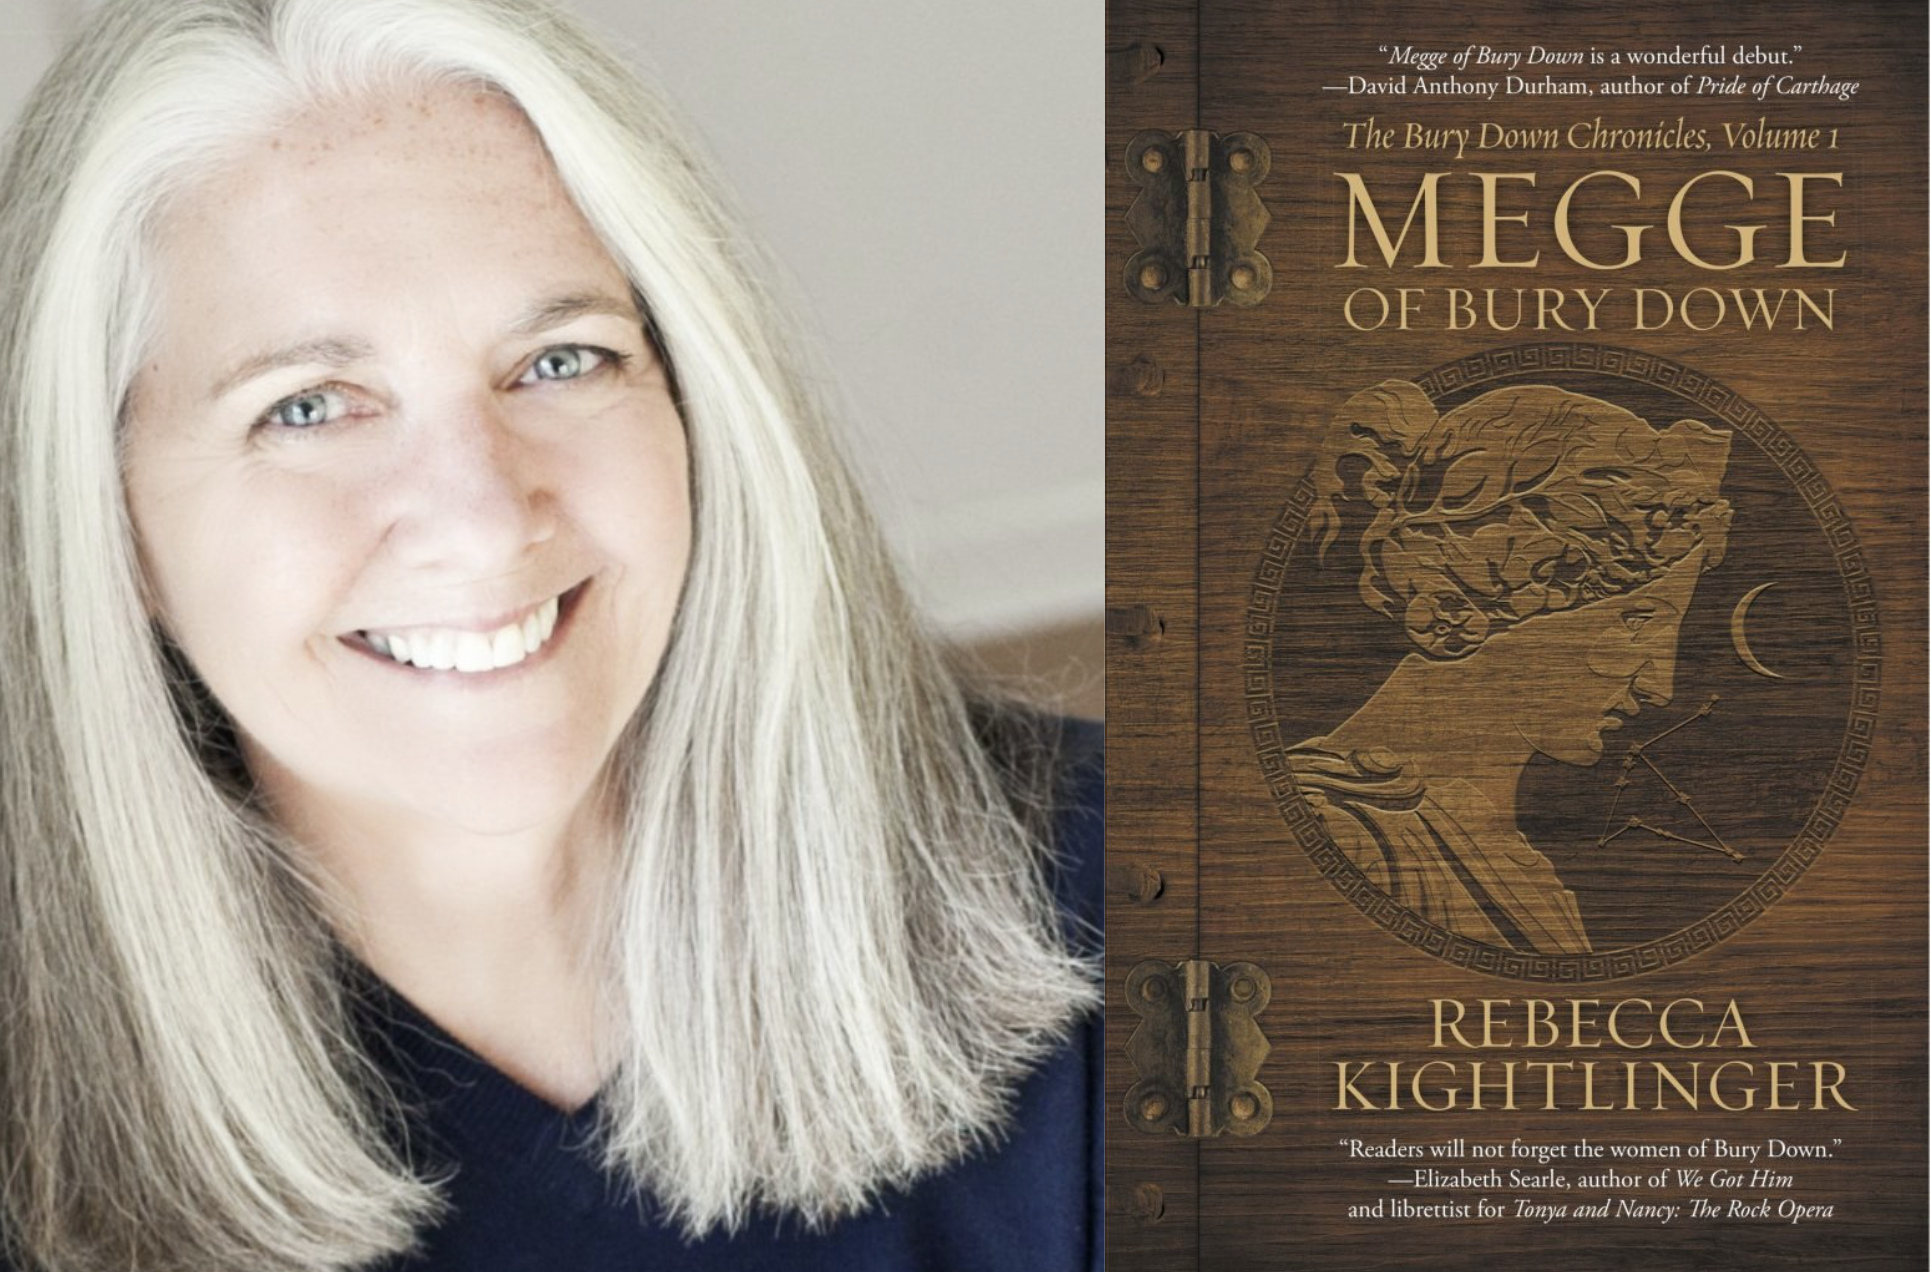 Student Spotlight: Rebecca Kightlinger